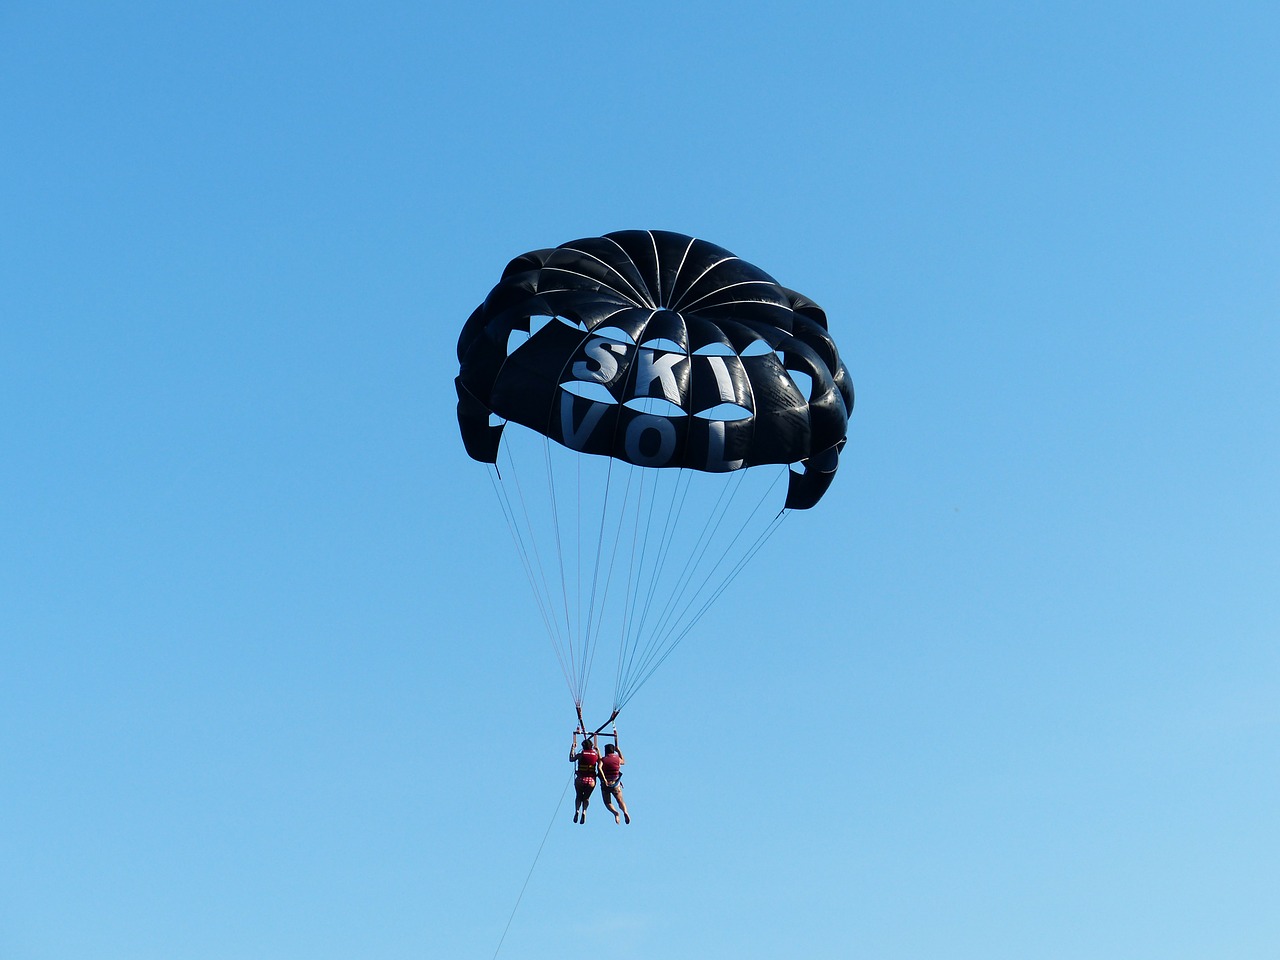 parasailing controllable parachuting high free photo